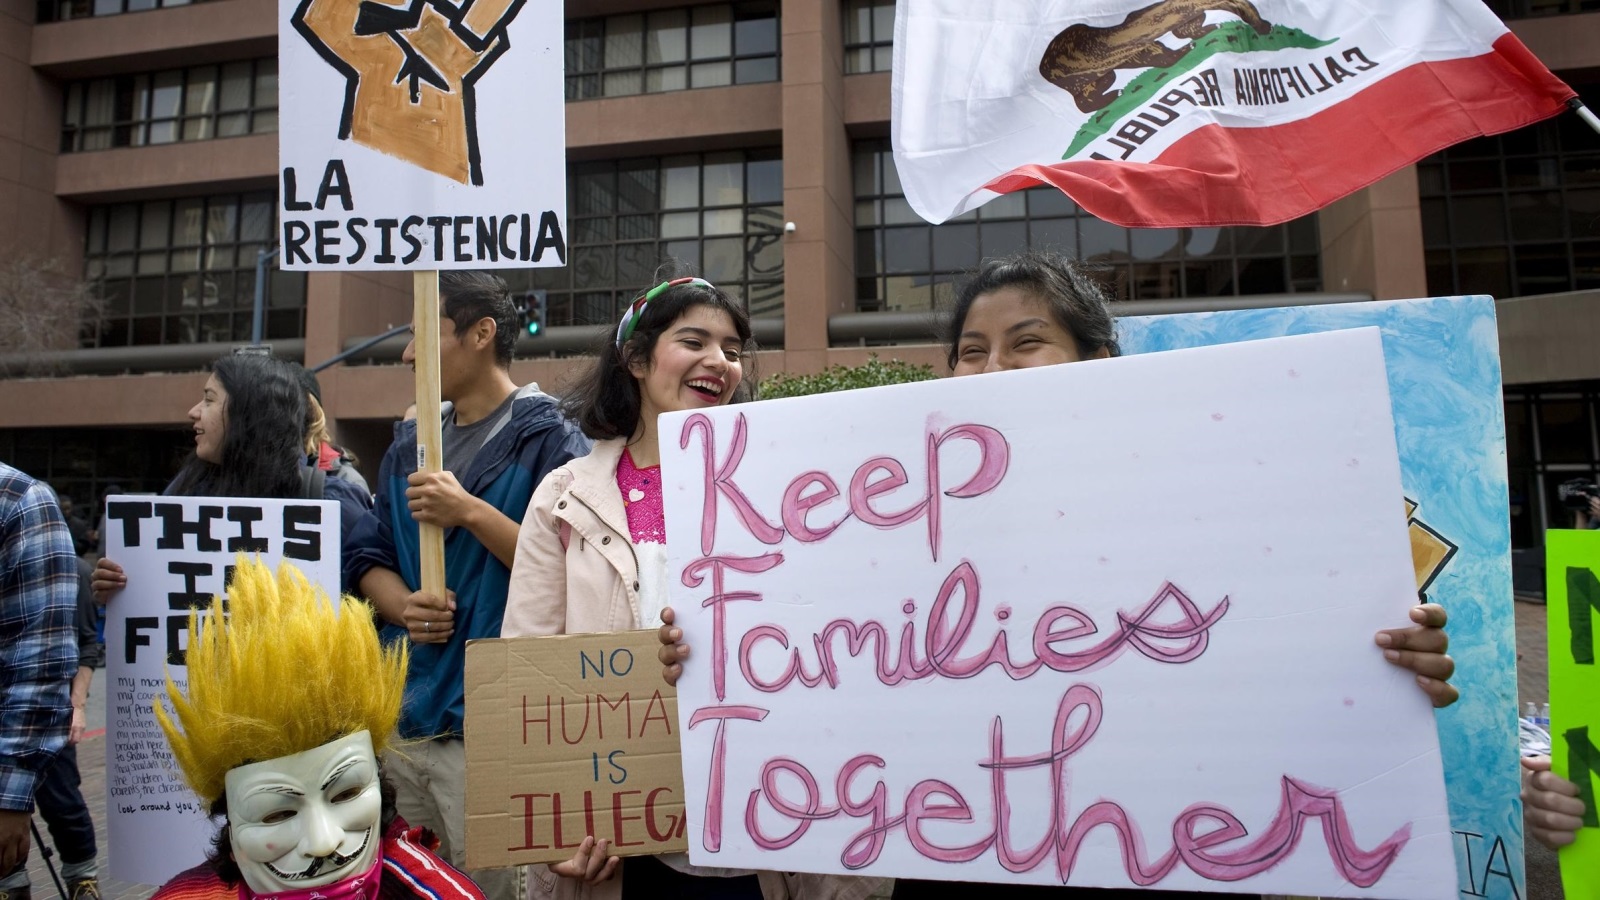 ‪مسيرة سابقة لأميركيين في سان دييغو بكاليفورنيا للتضامن مع المهاجرين‬ مسيرة سابقة لأميركيين في سان دييغو بكاليفورنيا للتضامن مع المهاجرين (الأوروبية)